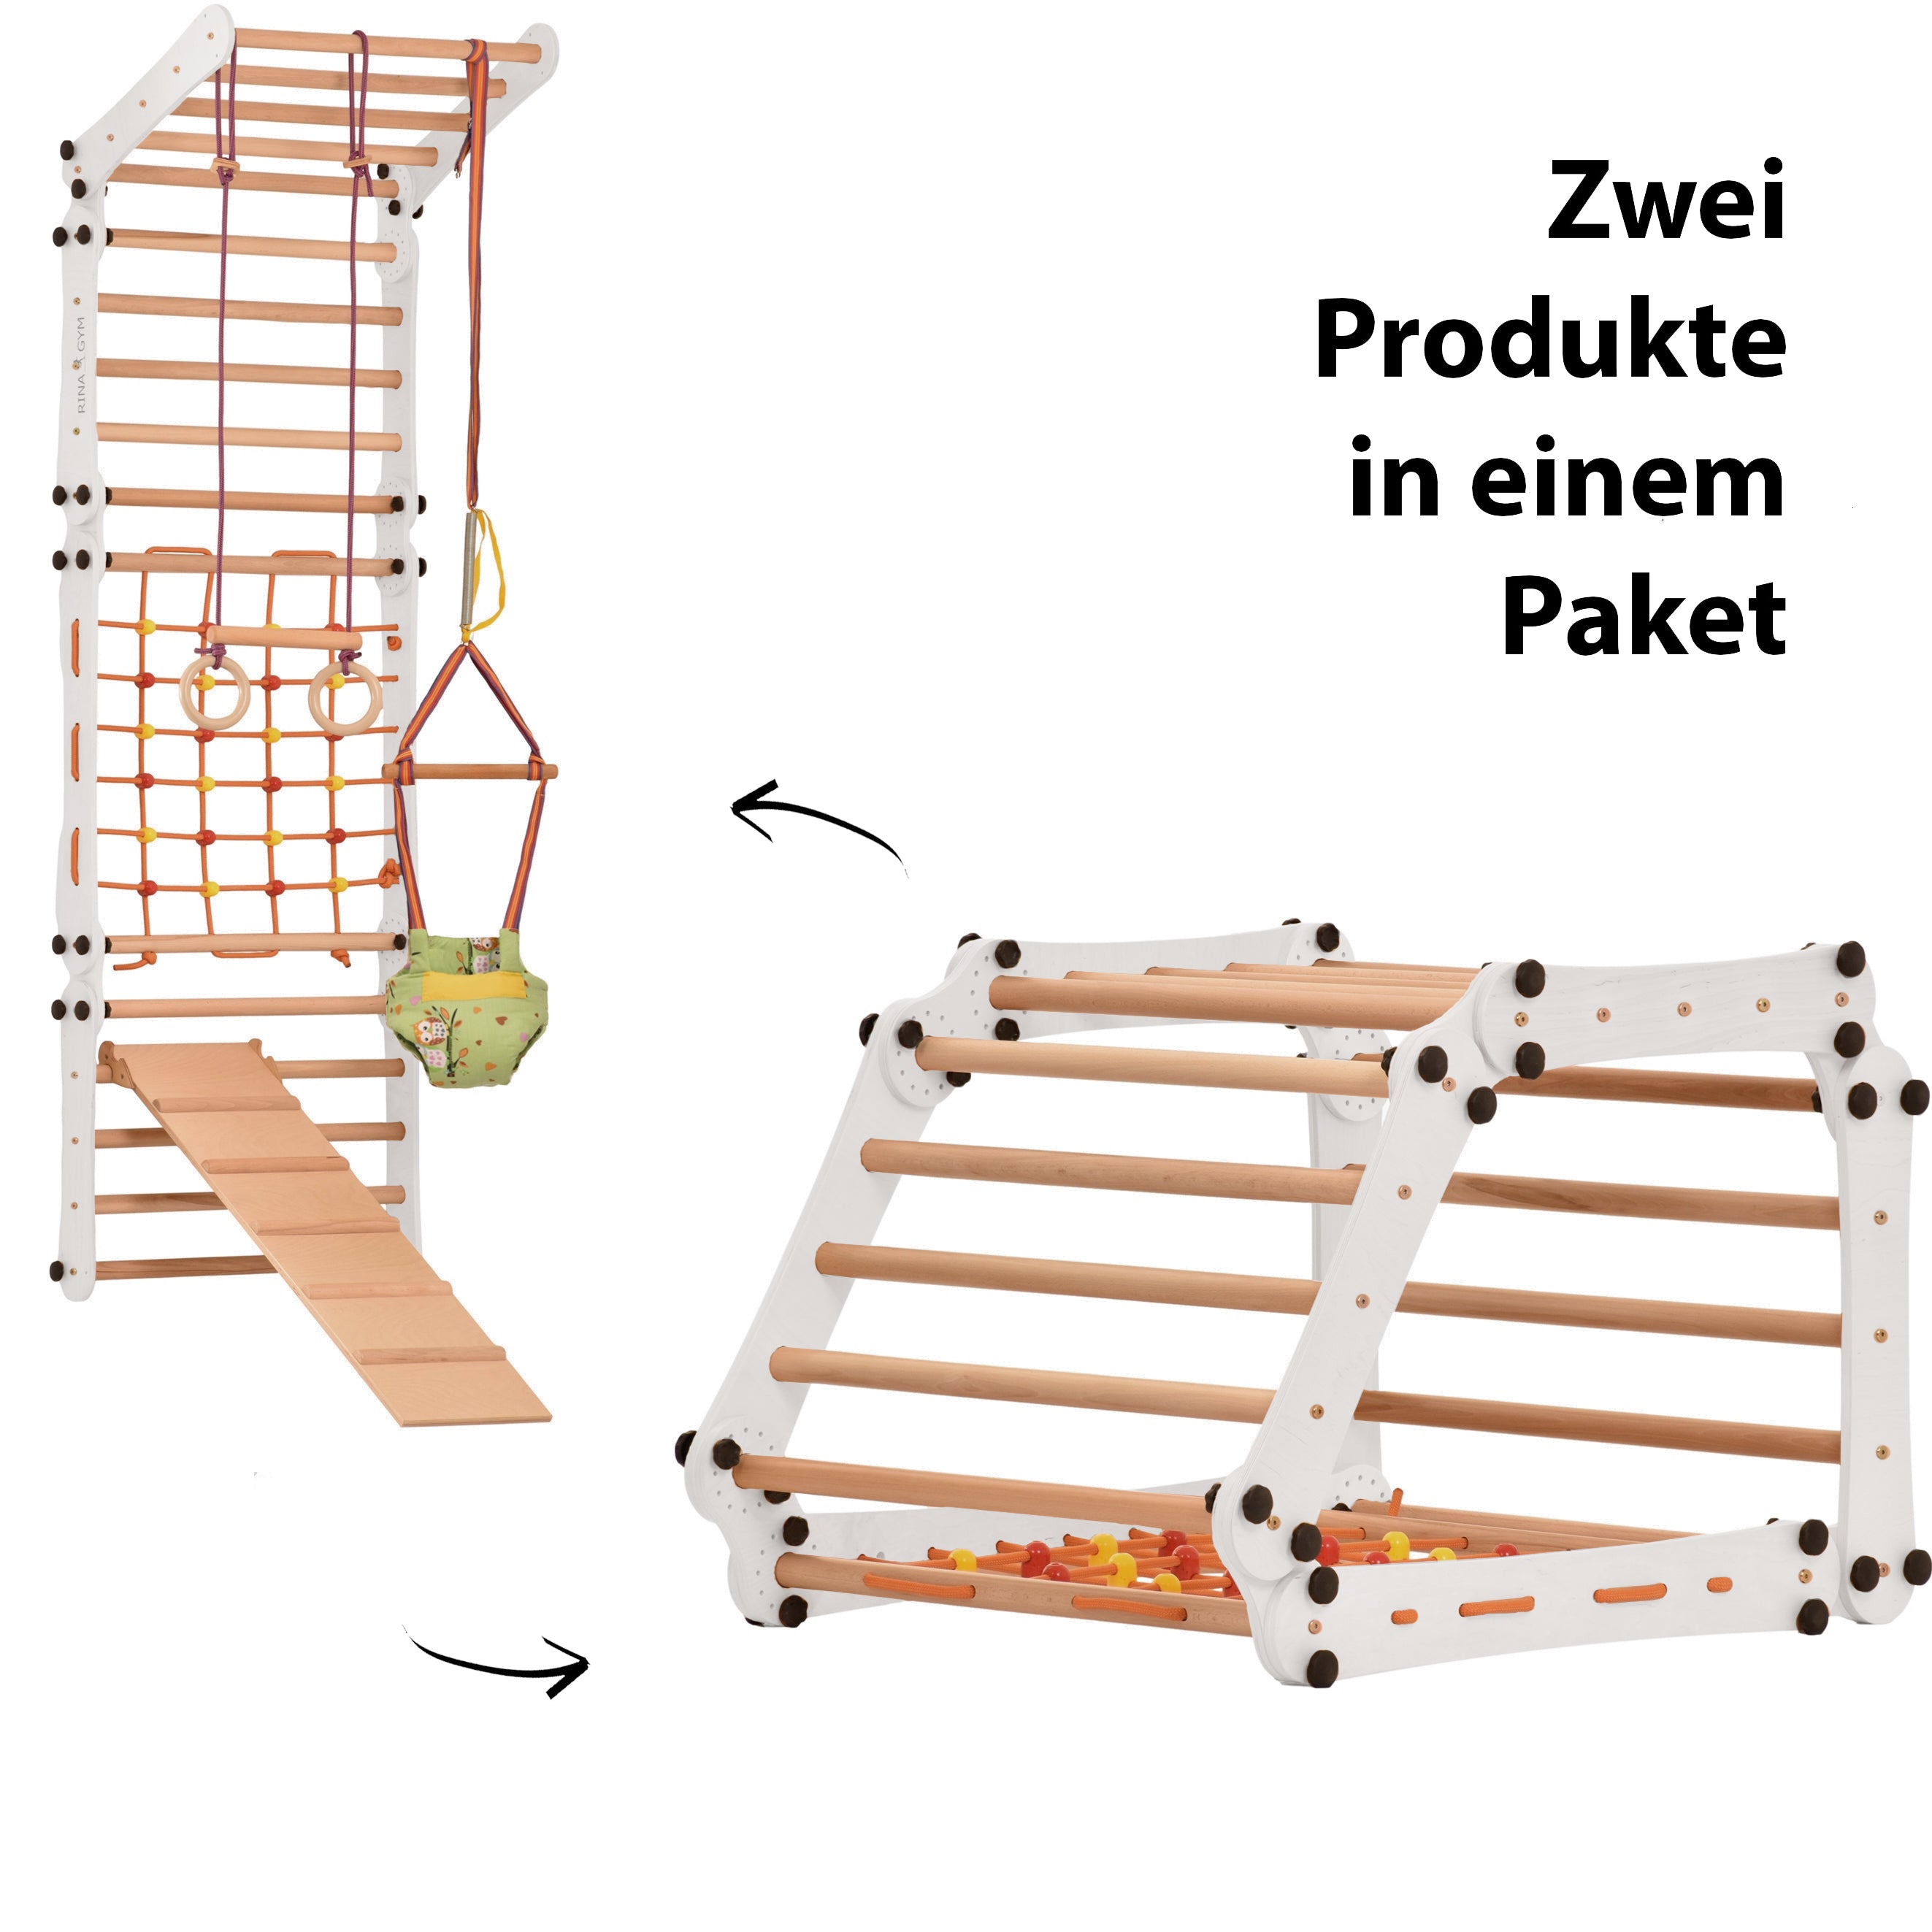 L'Espalier Suèdois est une échelle en bois conçu pour la